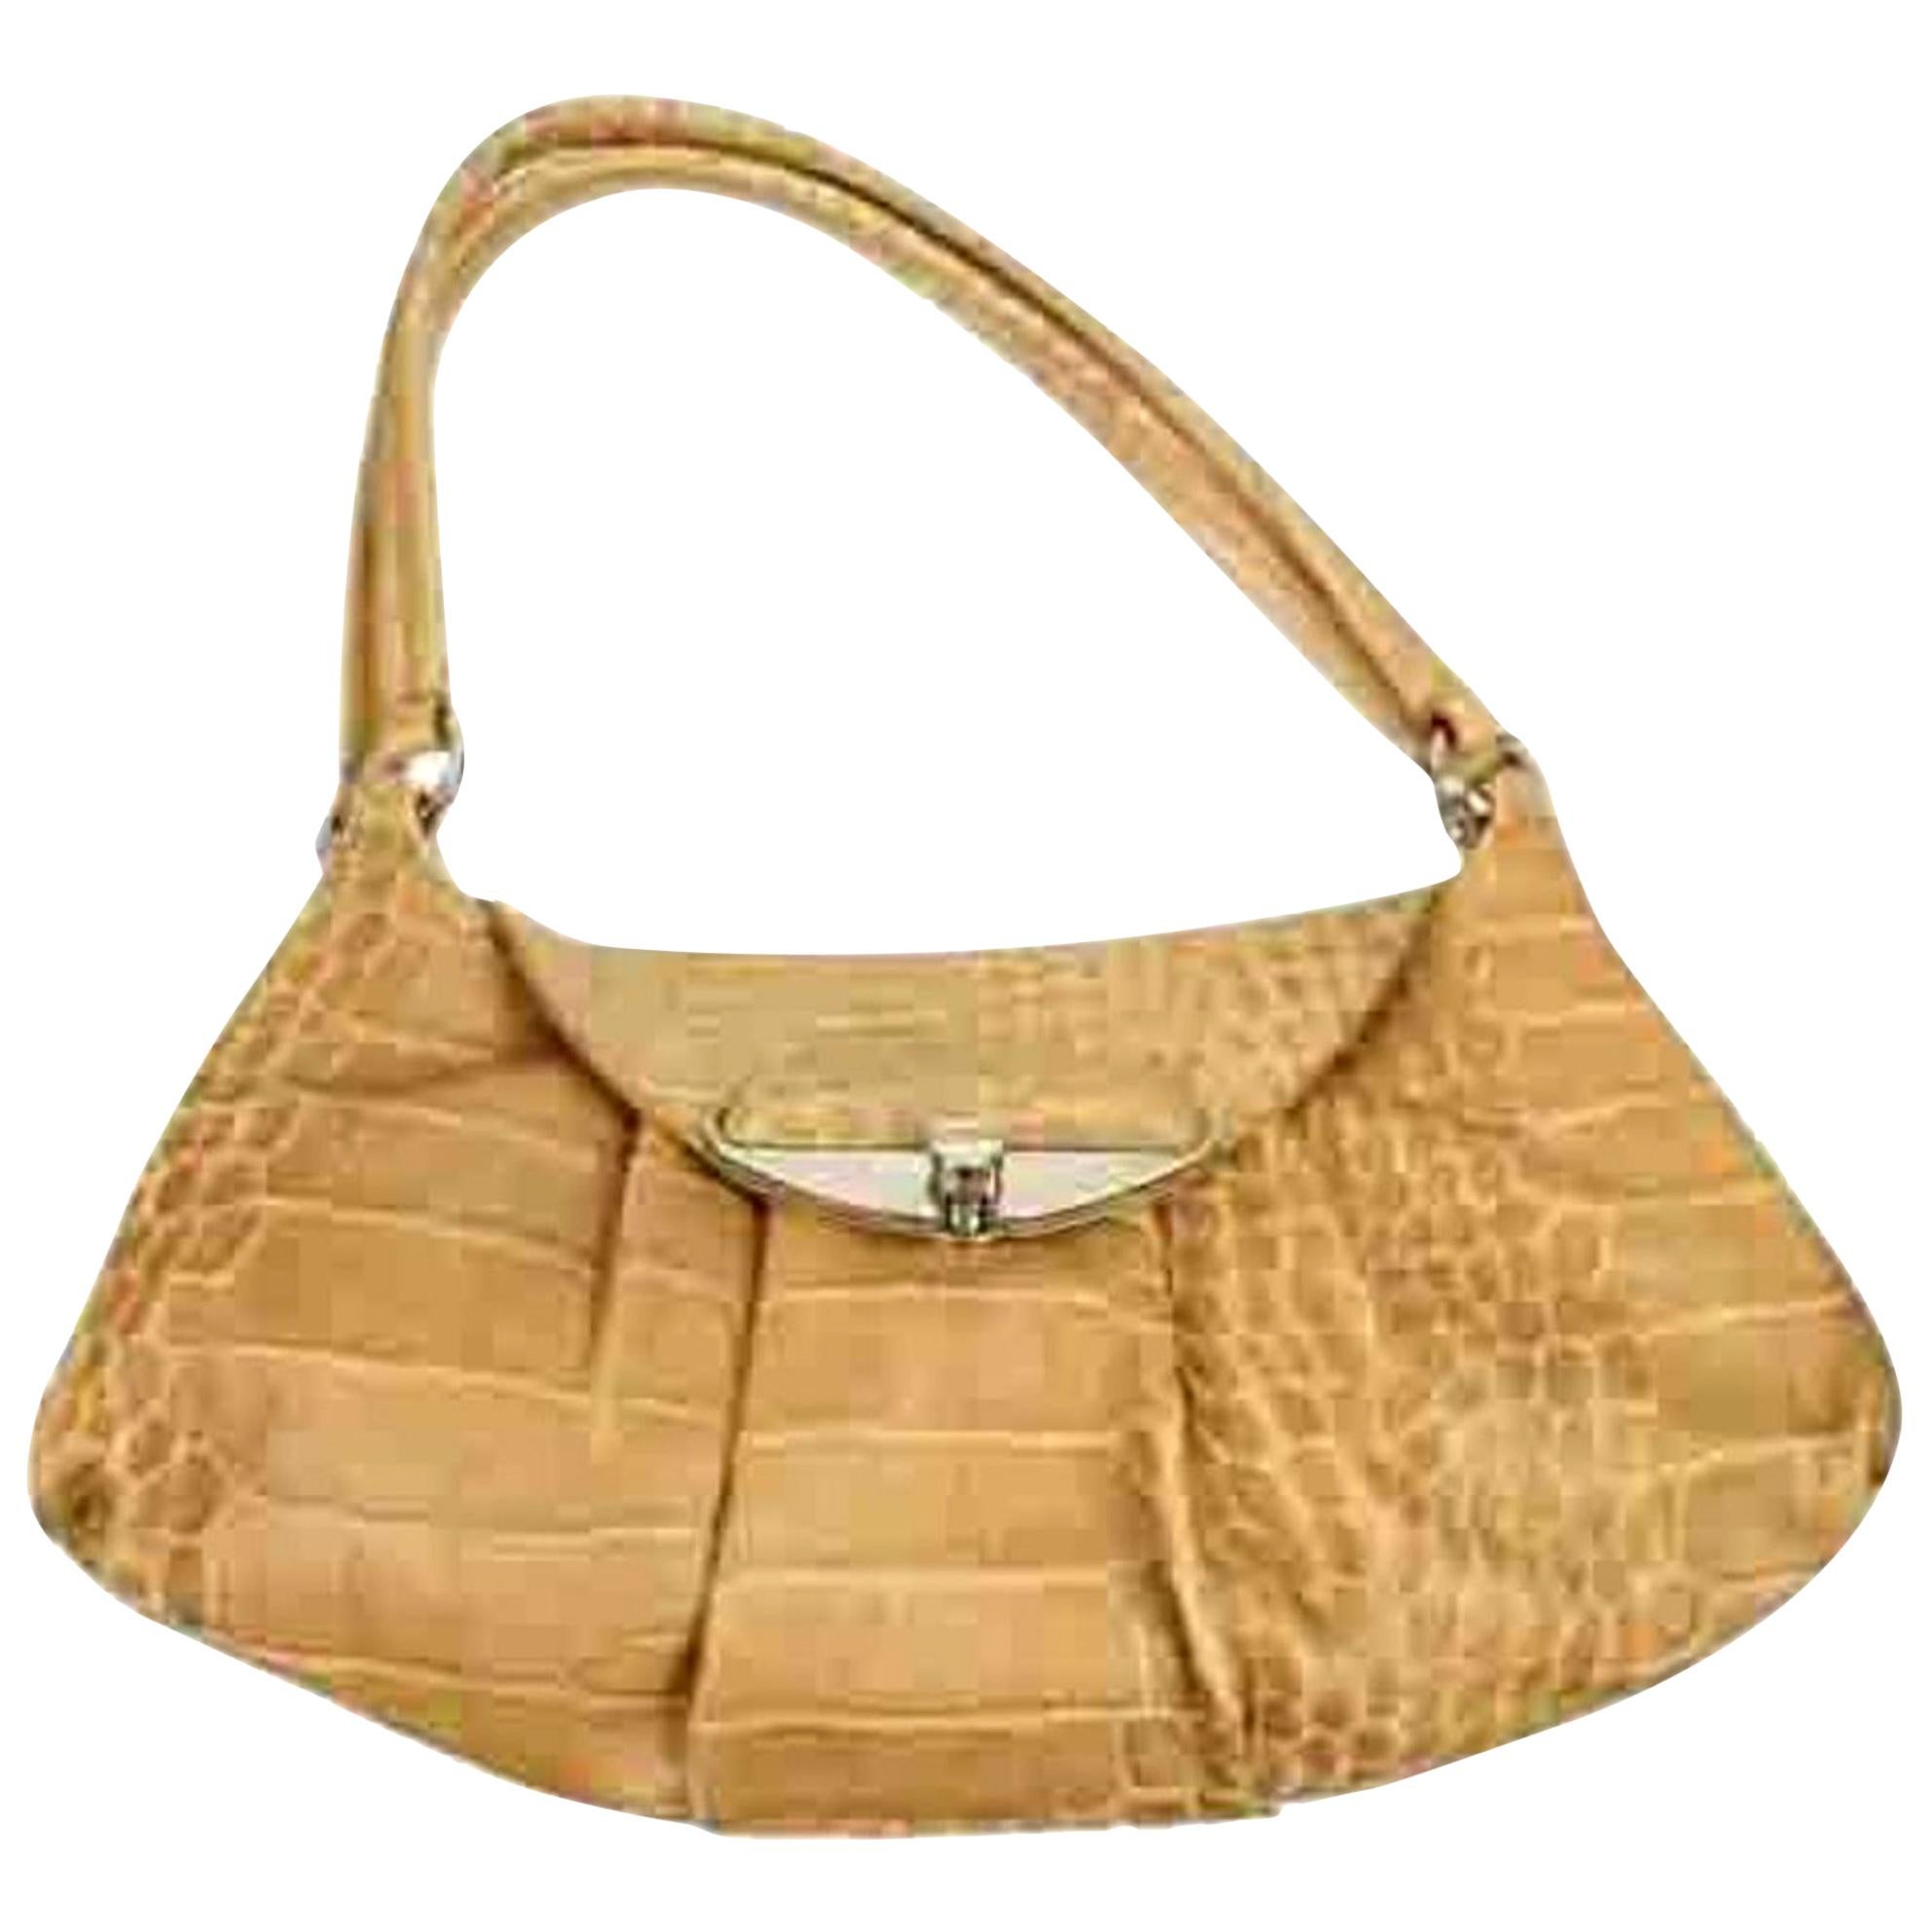 Furla Hobo Frlty01 Cognac Patent Leather Shoulder Bag For Sale